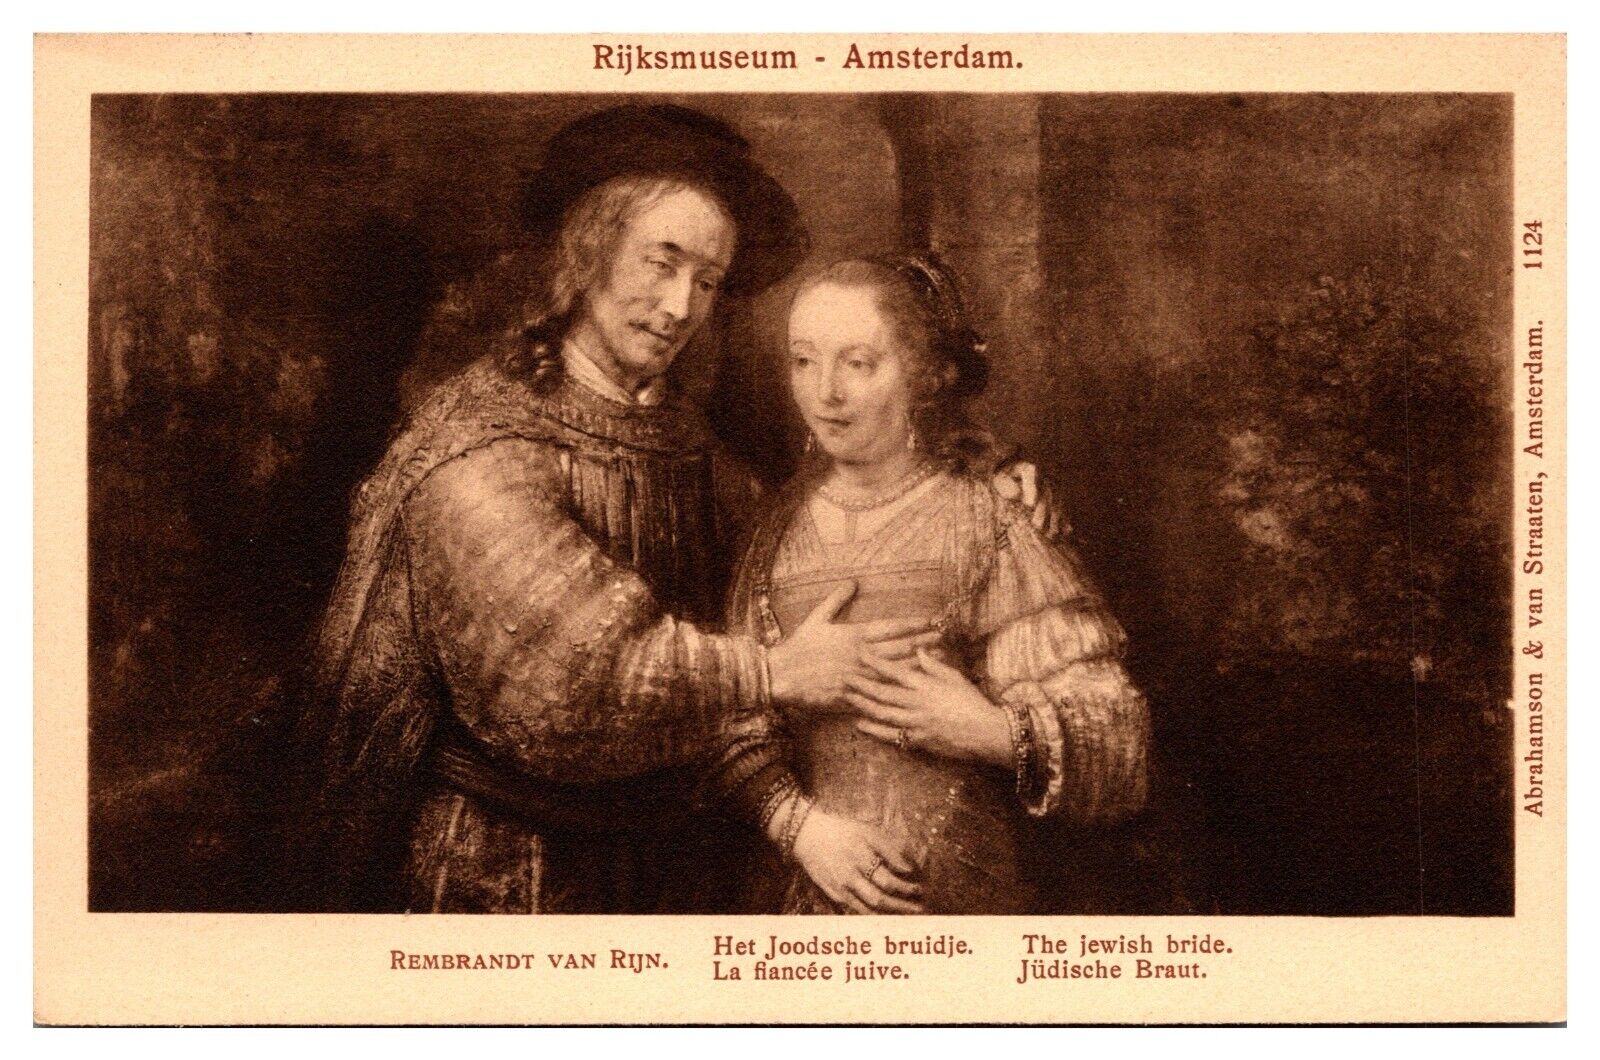 ANTQ The Jewish Bride, Rembrandt Van Rijn, Art, Rijksmuseum, Amsterdam